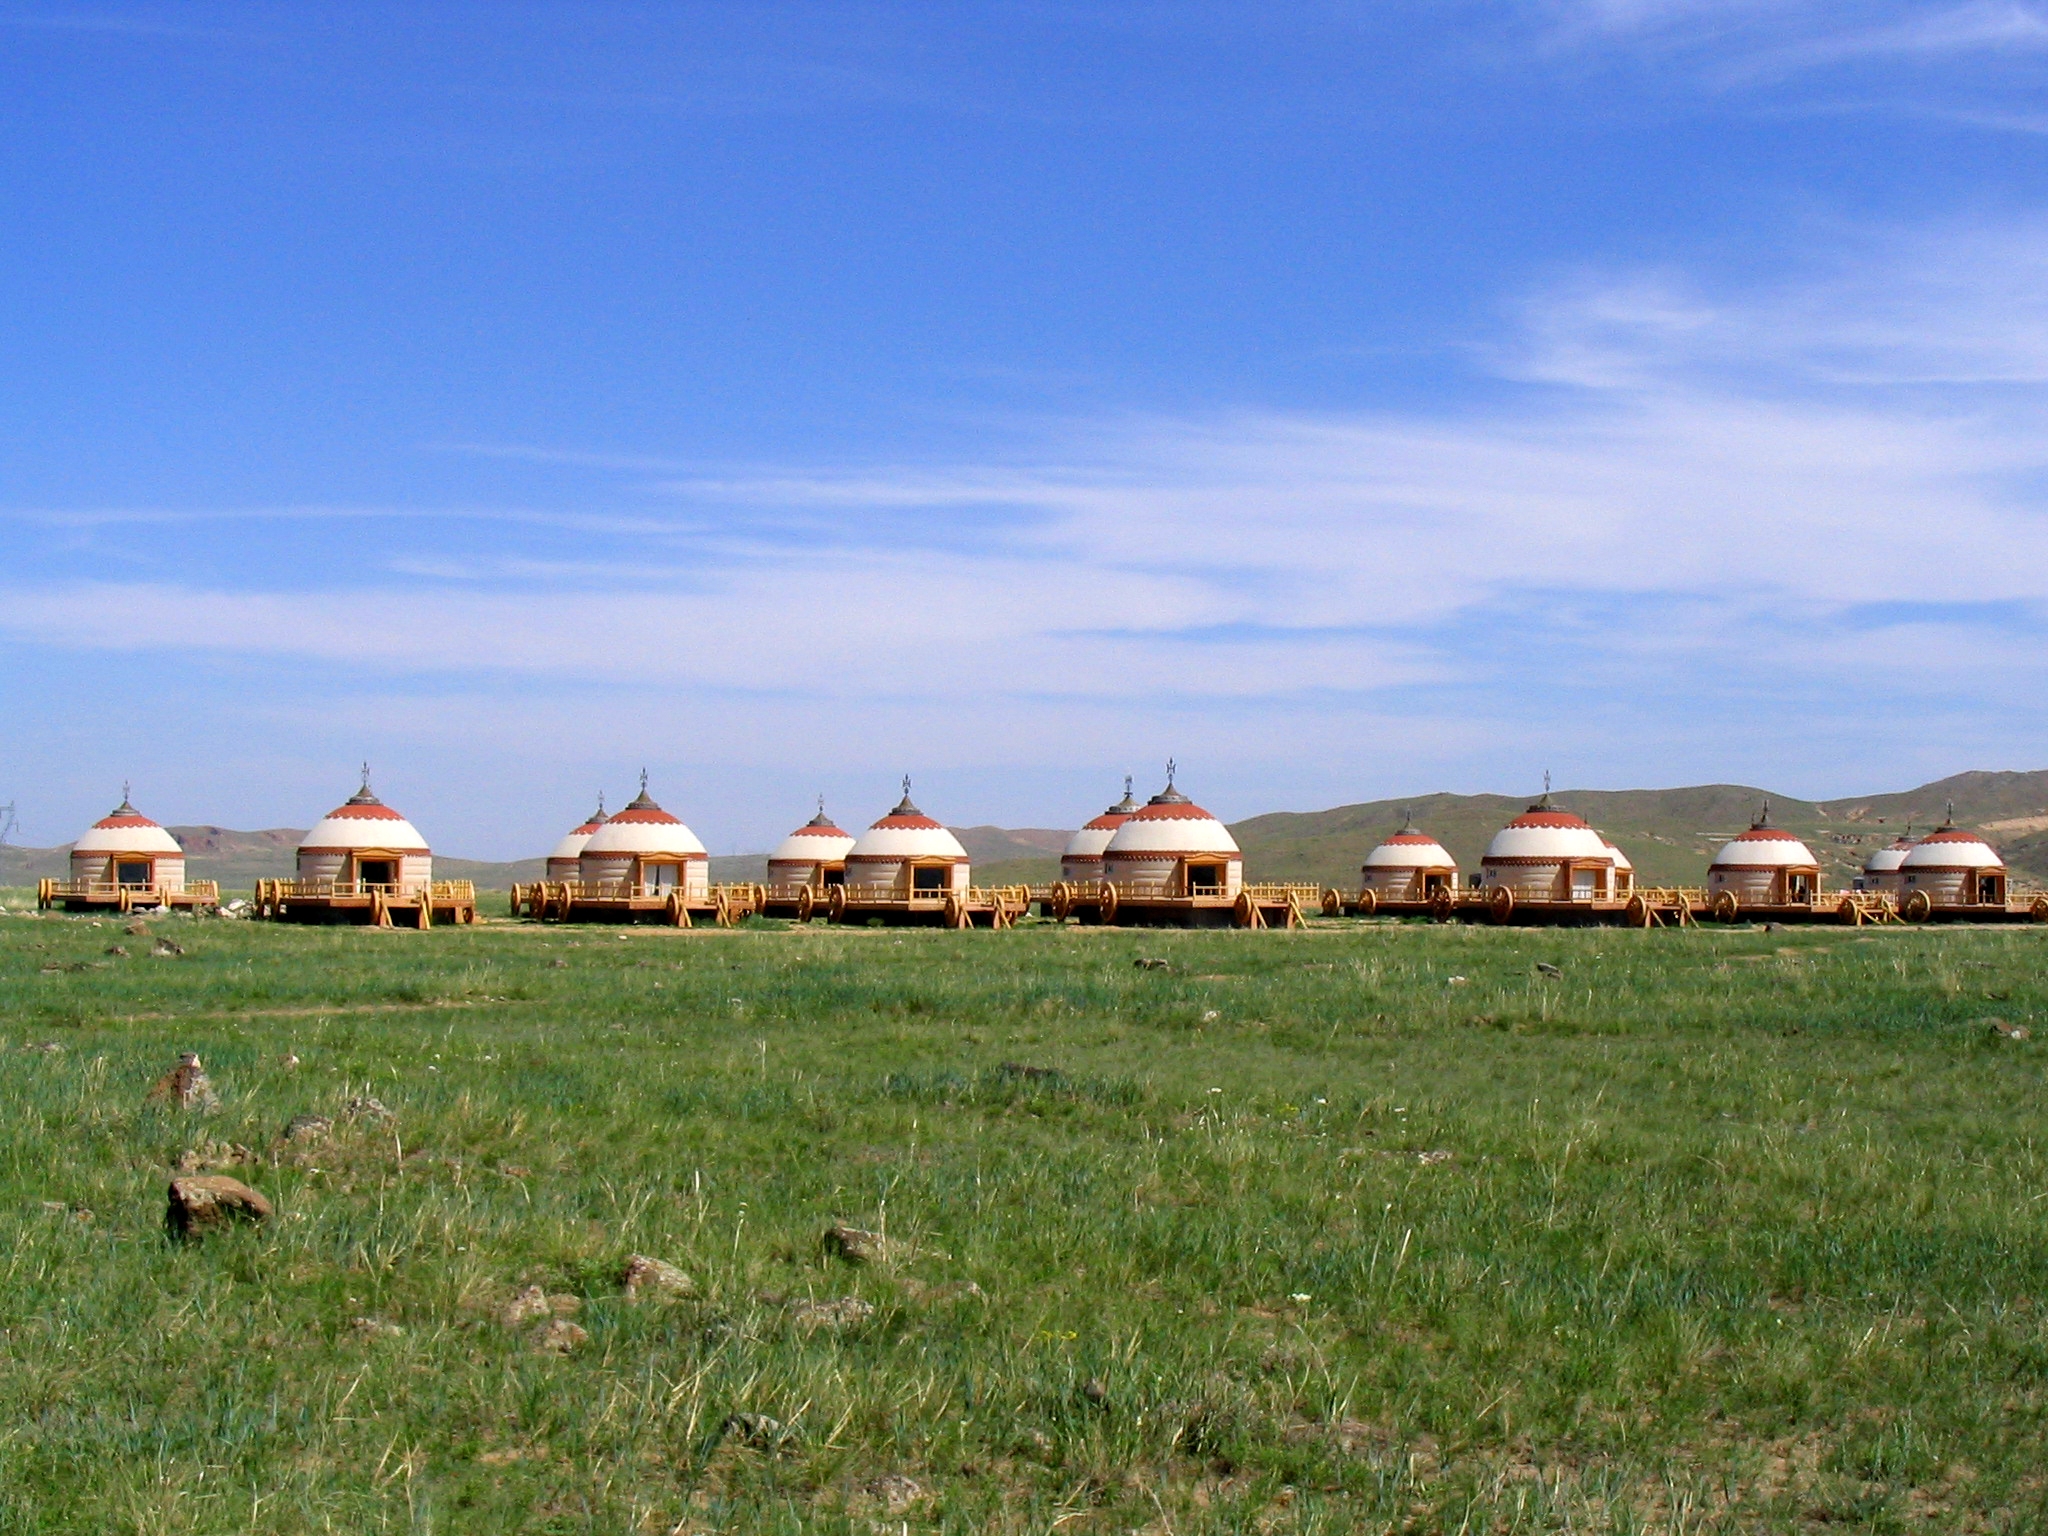 来满洲里，体验边境小城的异域风情 - 呼伦贝尔体验 - 内蒙古旅游网-资讯、景点、服务、知识、攻略一网打尽